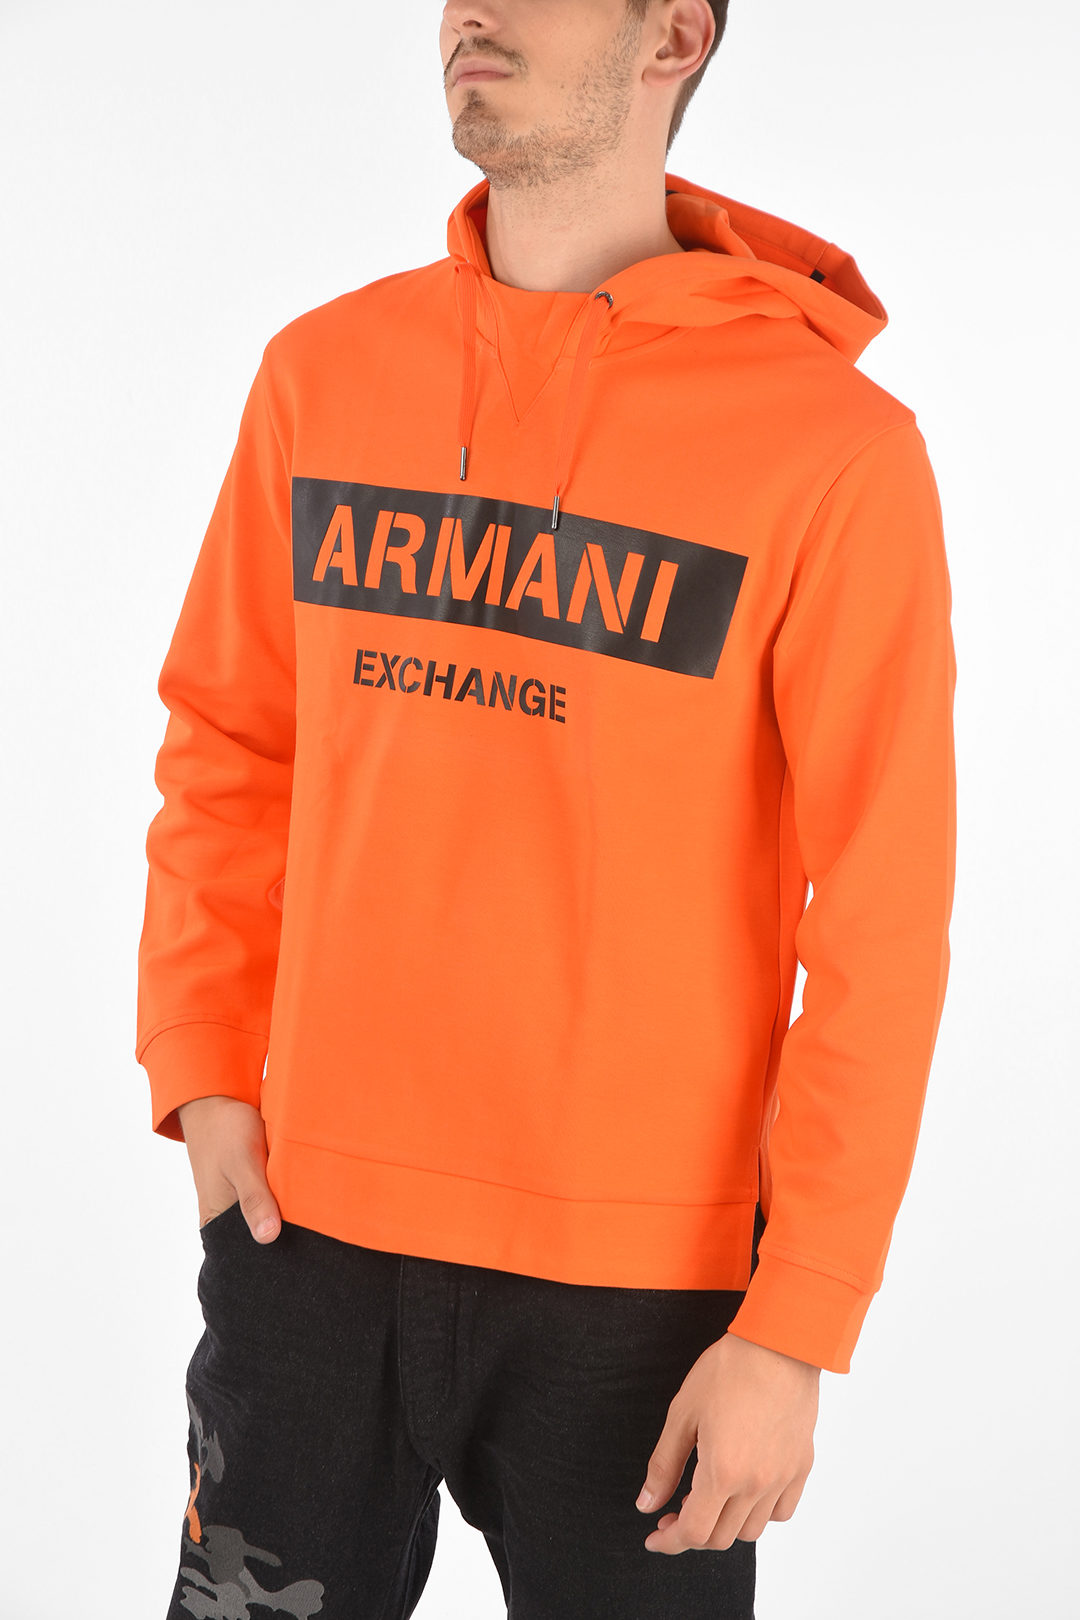 Armani ARMANI EXCHANGE Hooded Printed Sweatshirt men - Glamood Outlet